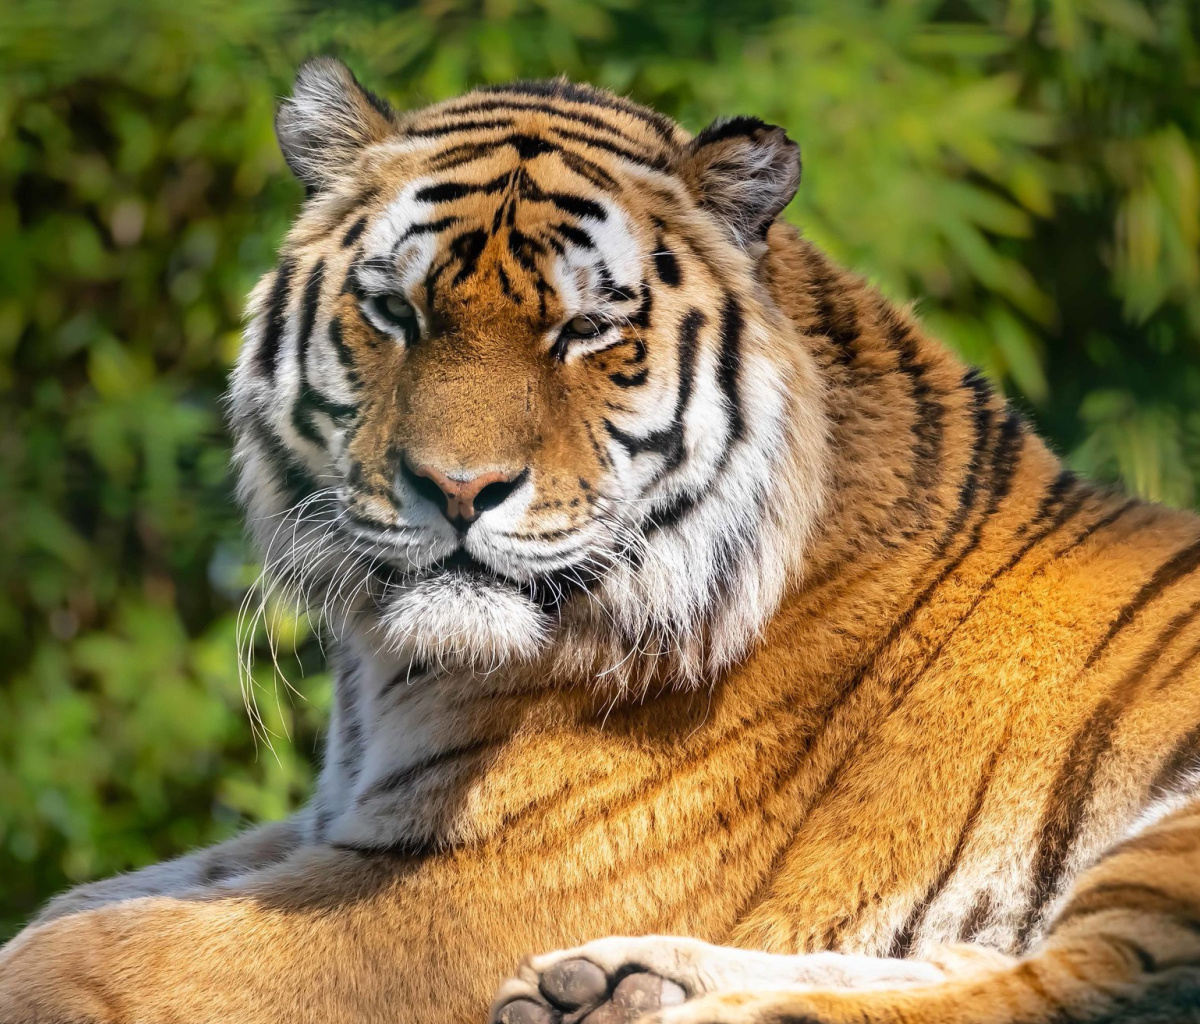 Malay Tiger at the New York Zoo screenshot #1 1200x1024